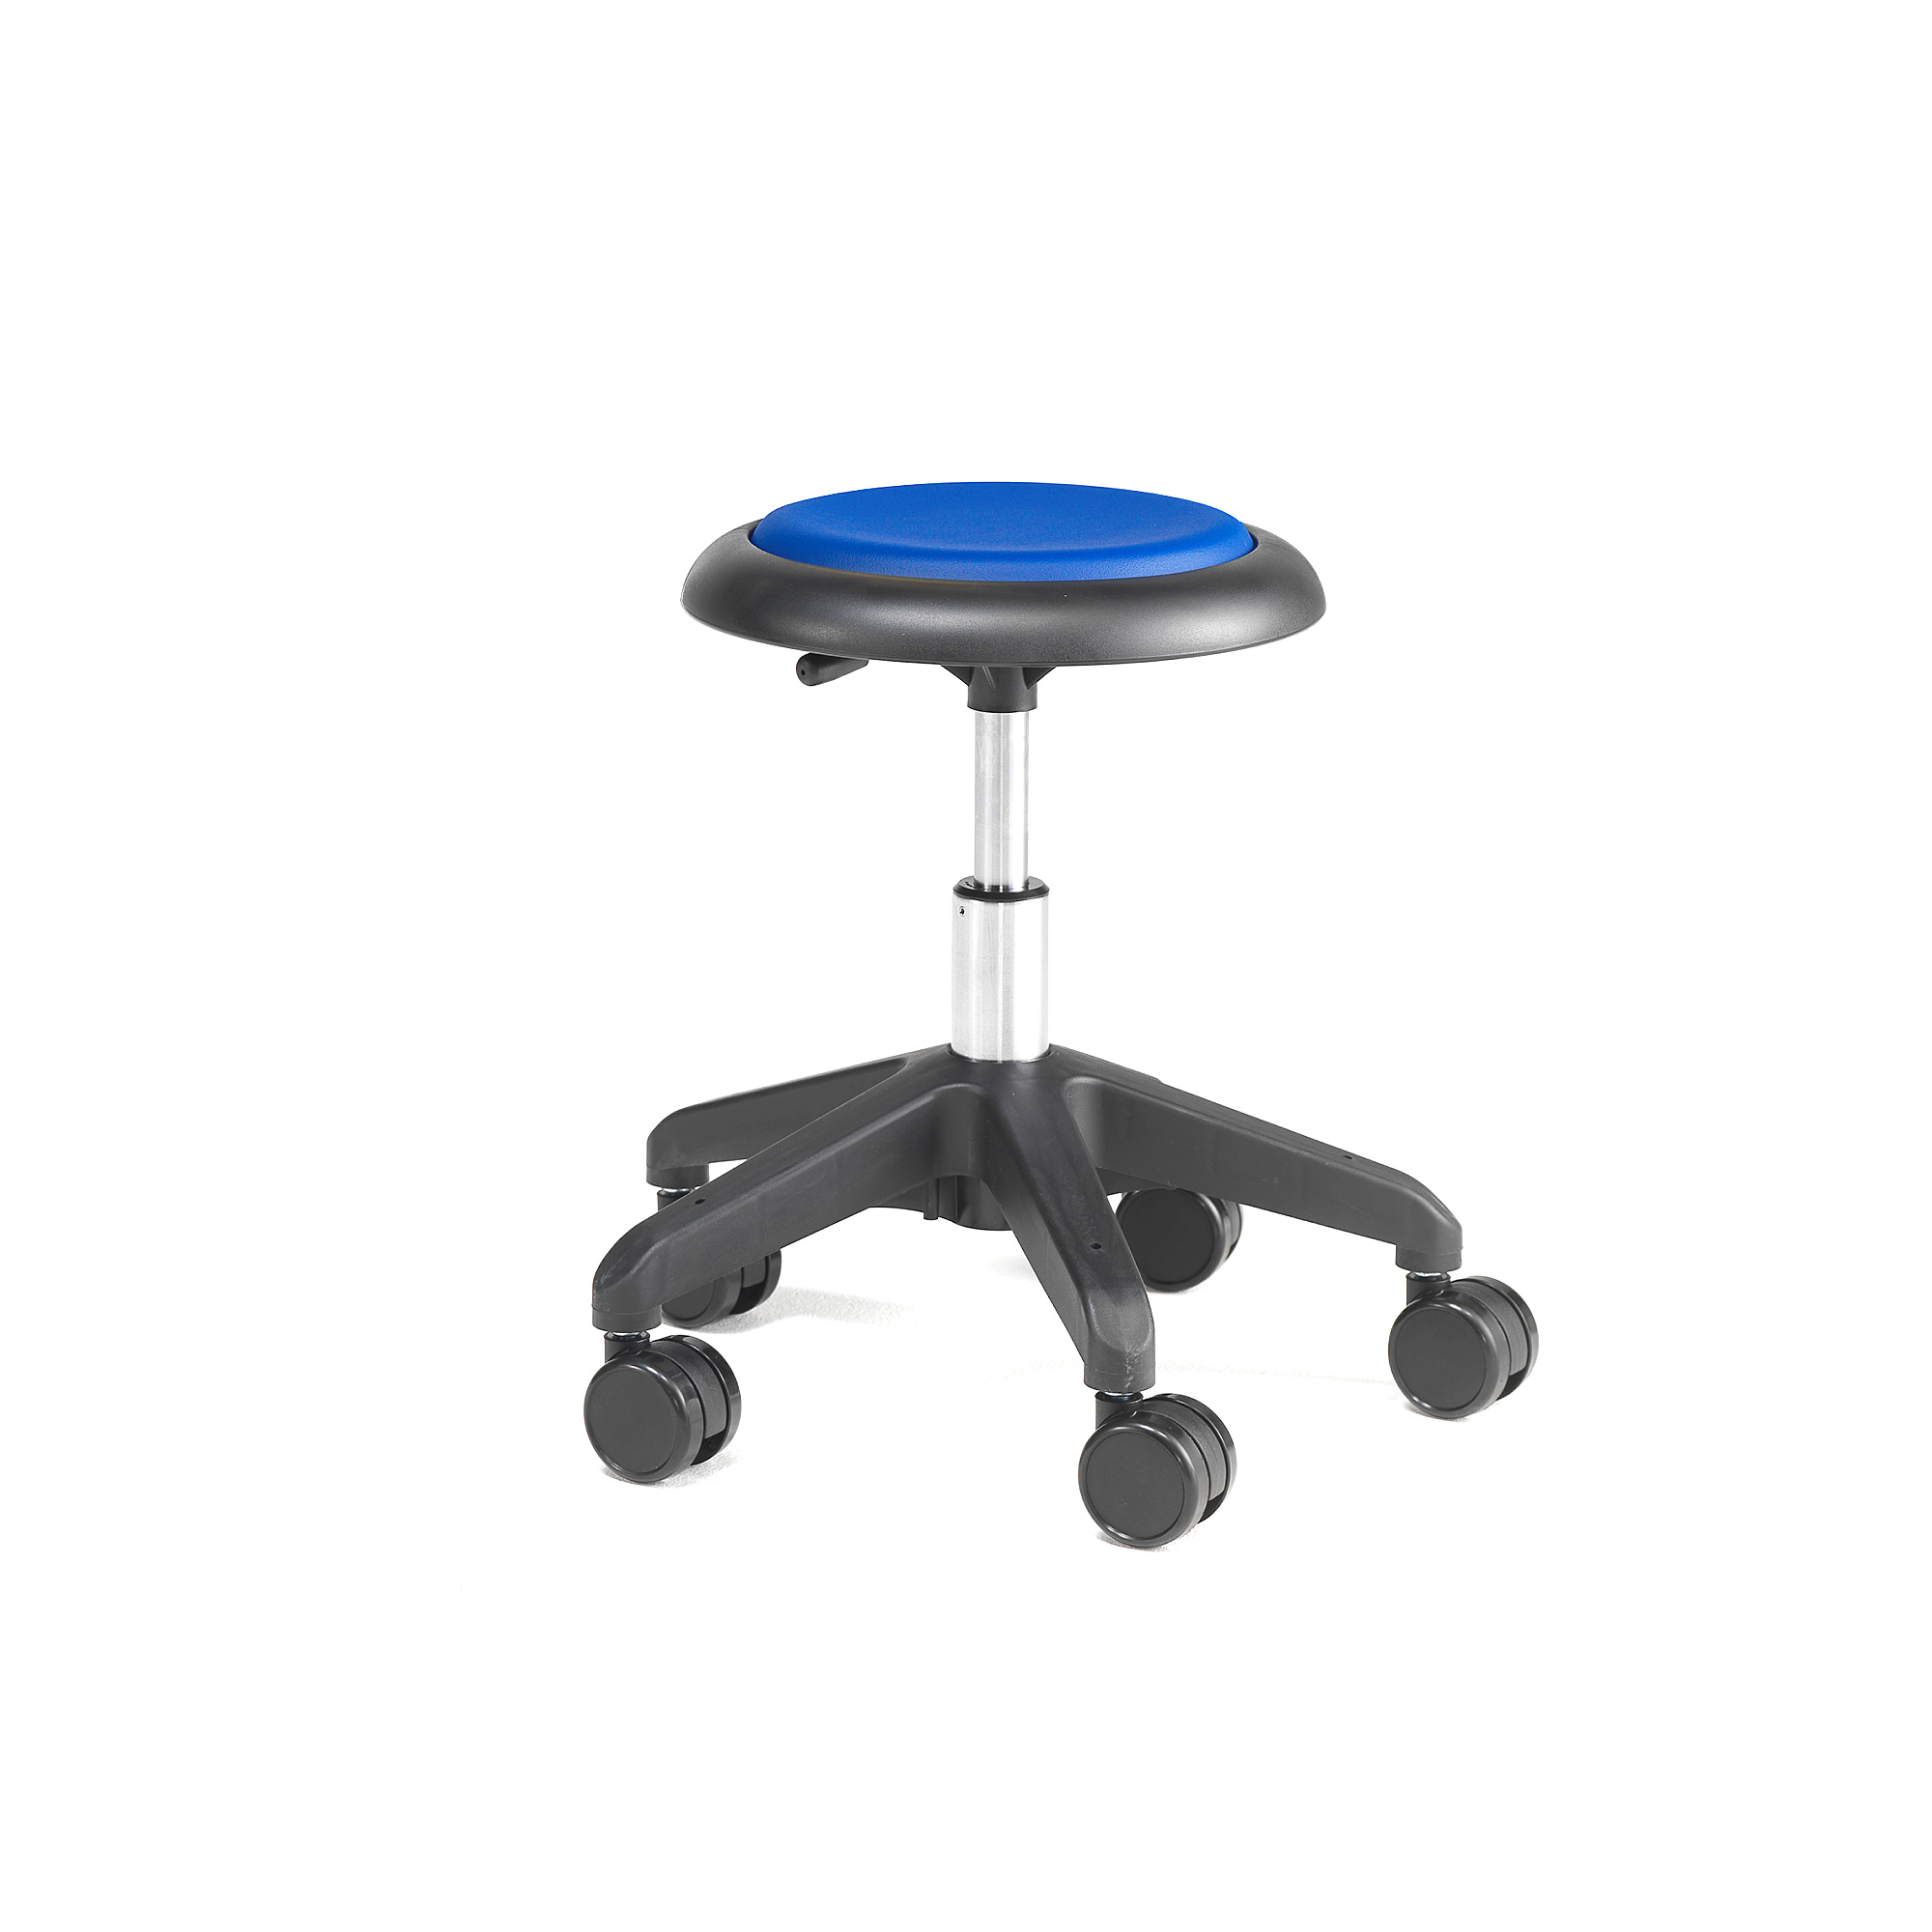 E-shop Pracovná dielenská stolička MICRO, s kolieskami, výška 380-510 mm, modrá